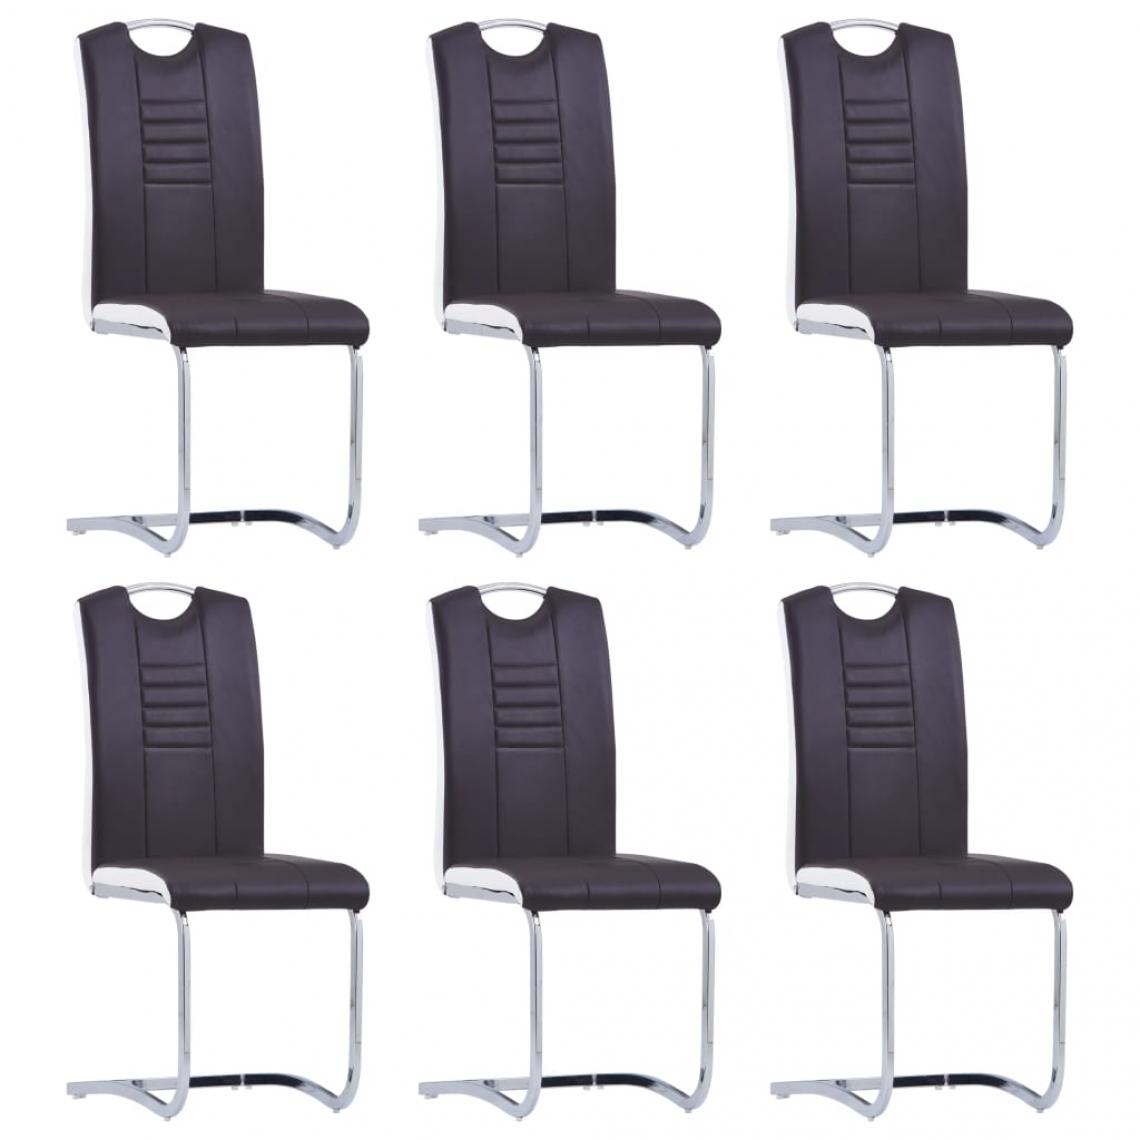 Decoshop26 - Lot de 6 chaises de salle à manger cuisine cantilever design moderne similicuir marron CDS022305 - Chaises